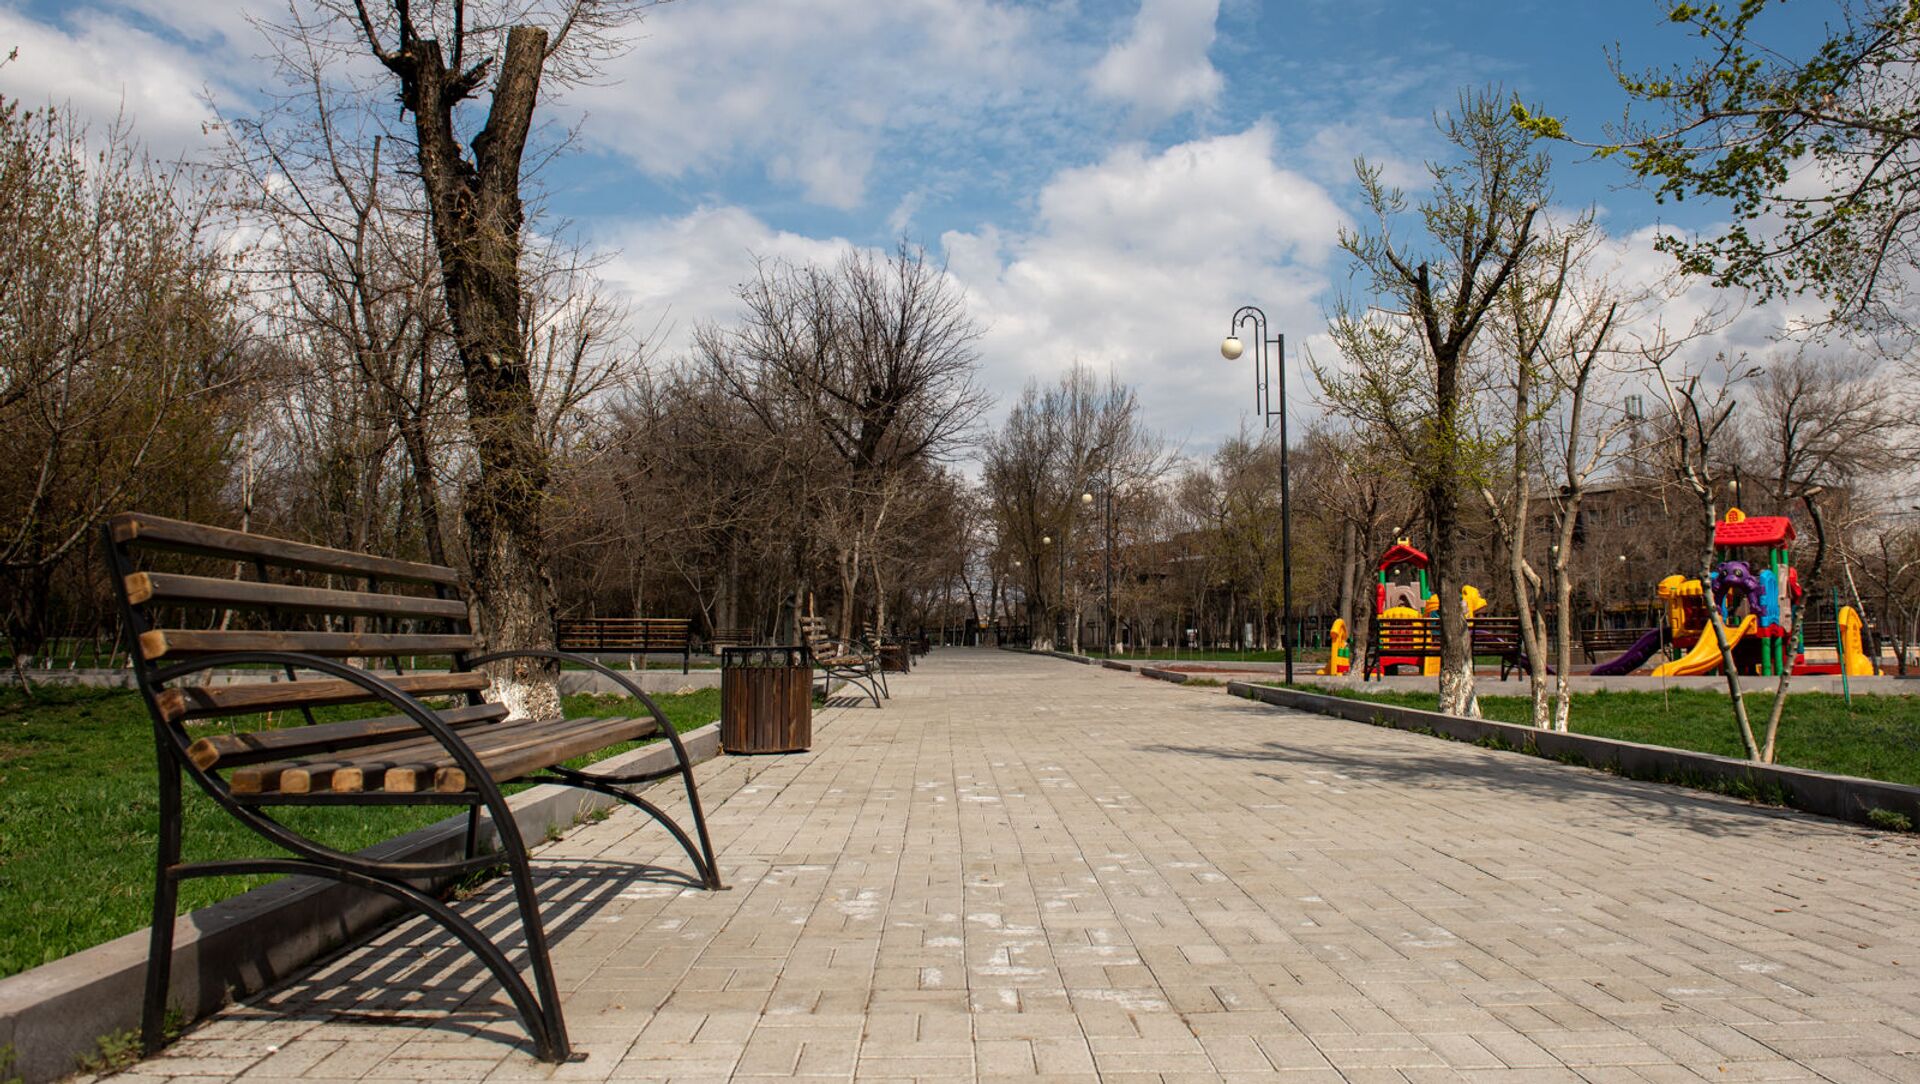 Улицы и парки города во время чрезвычайной ситуации (25 марта 2020). Ереван - Sputnik Армения, 1920, 10.09.2021